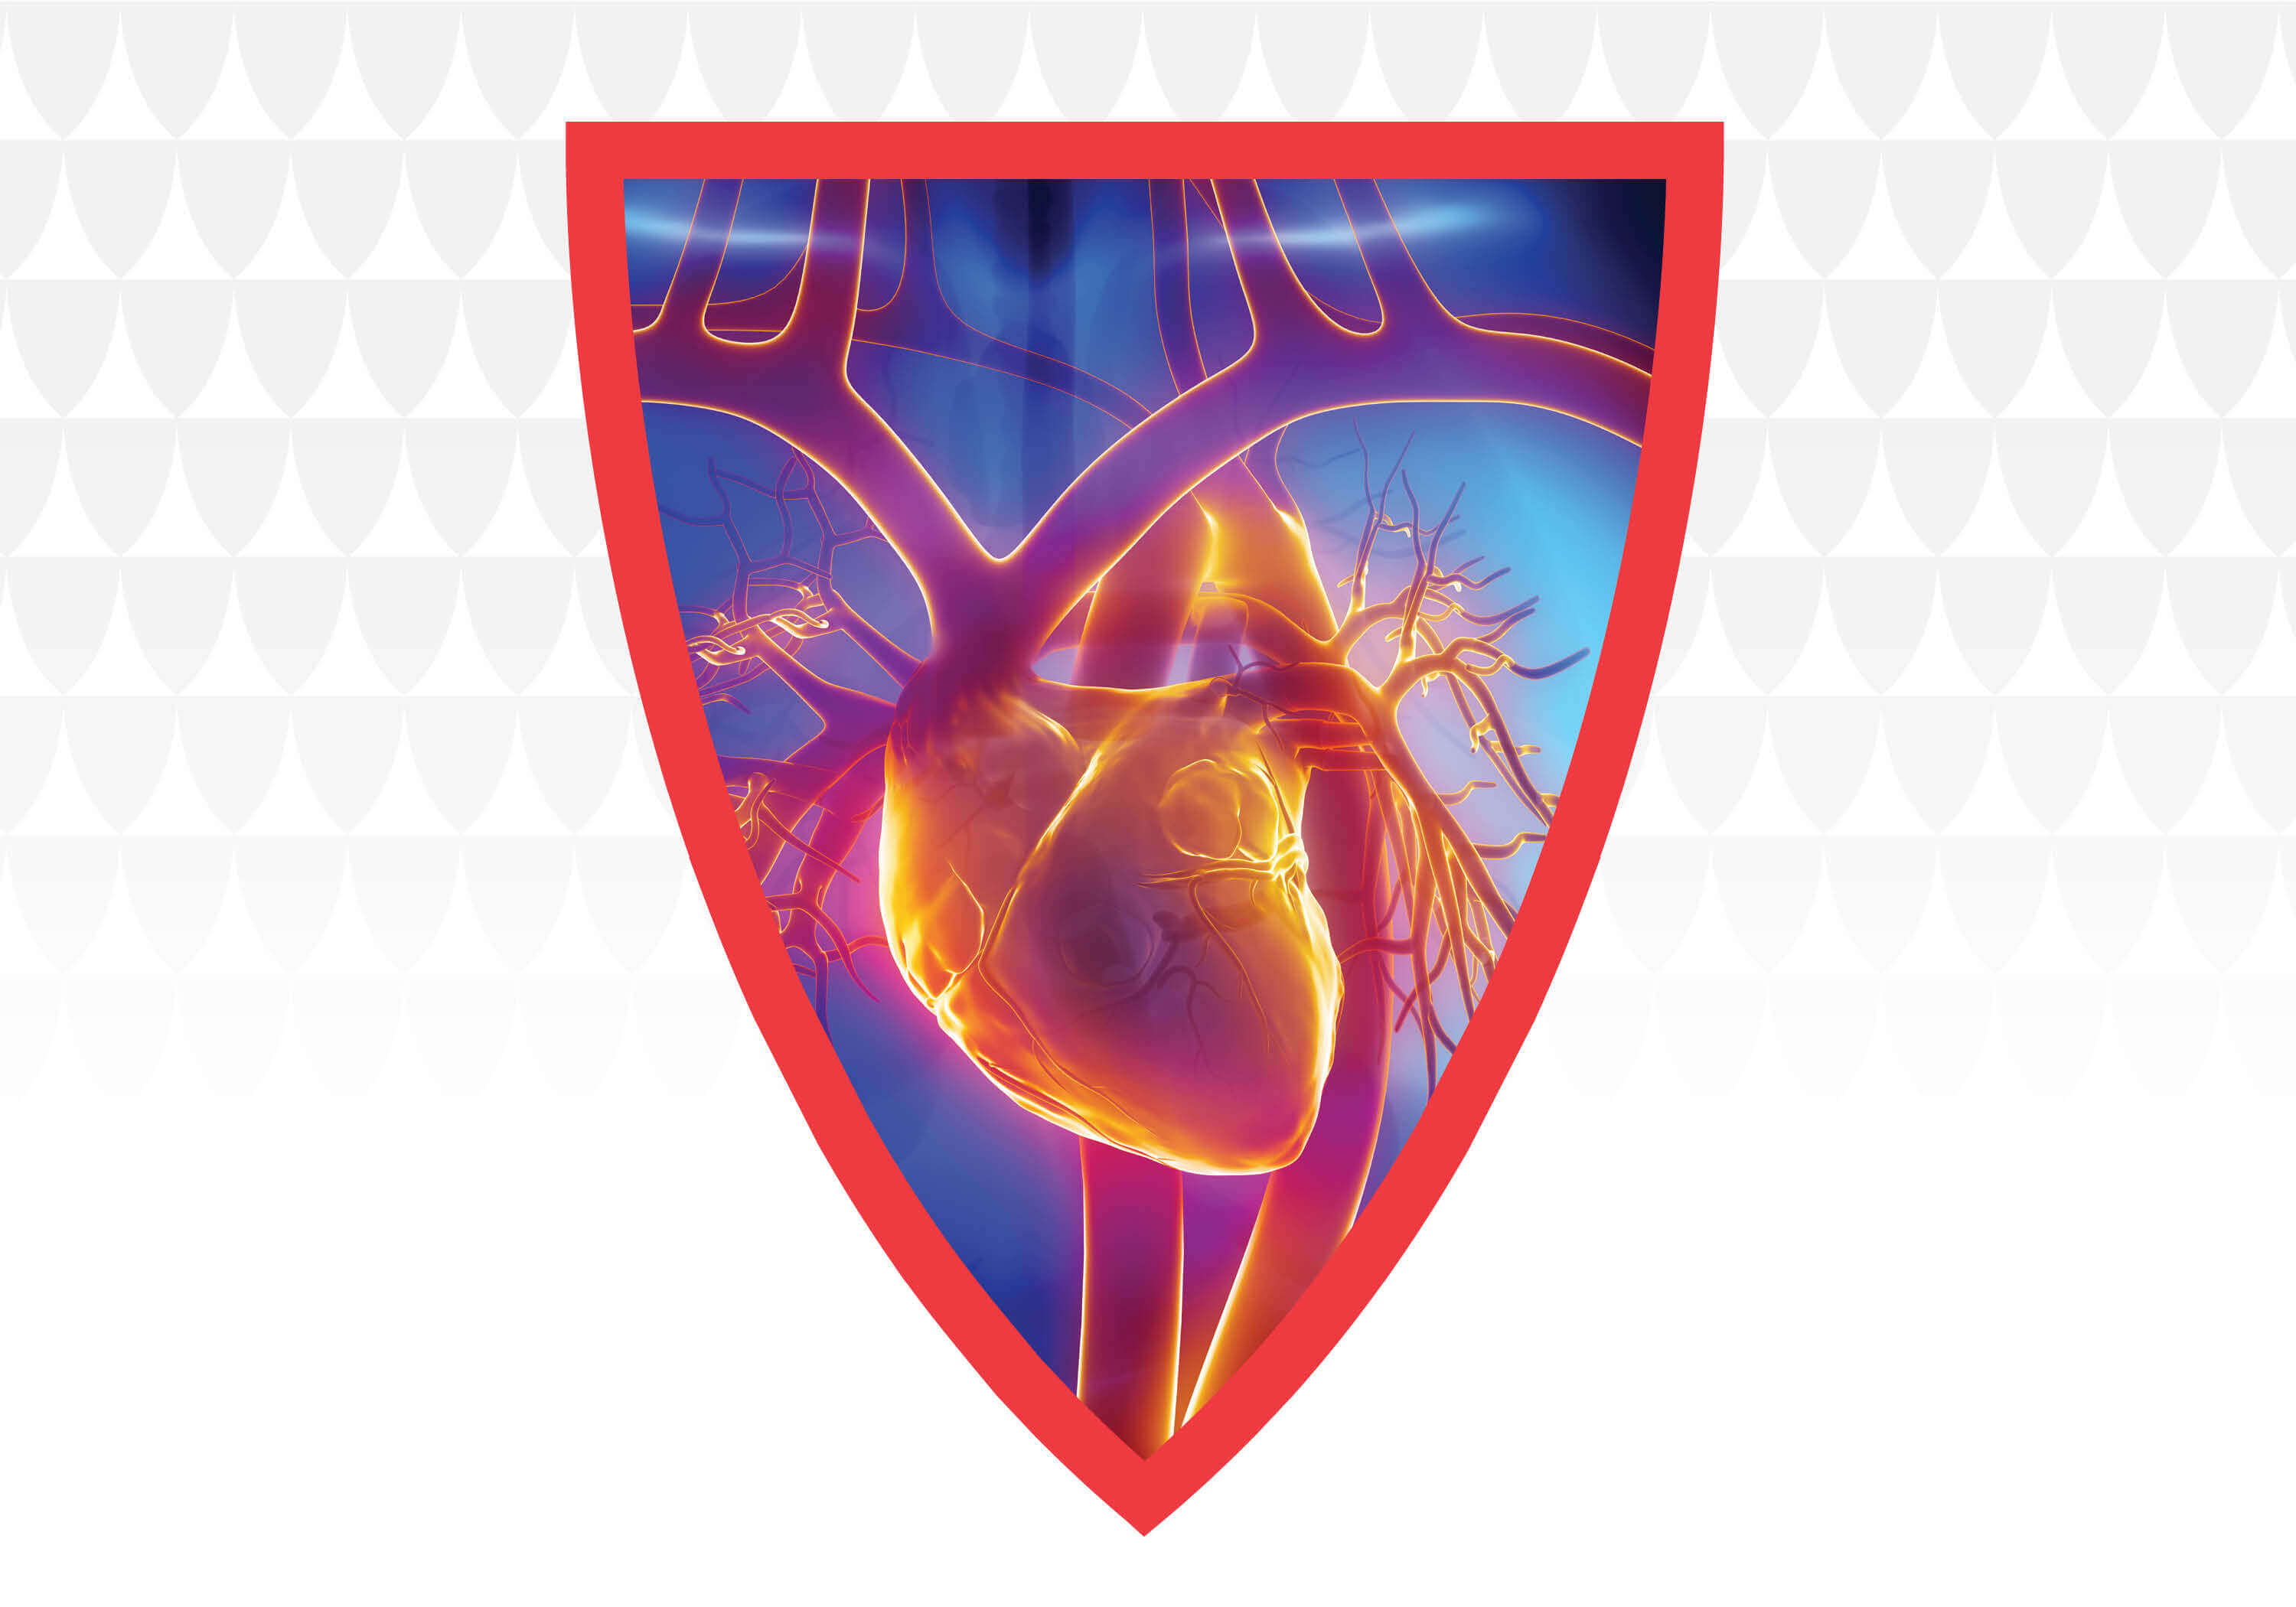 Harrington Heart & Vascular Institute shield image